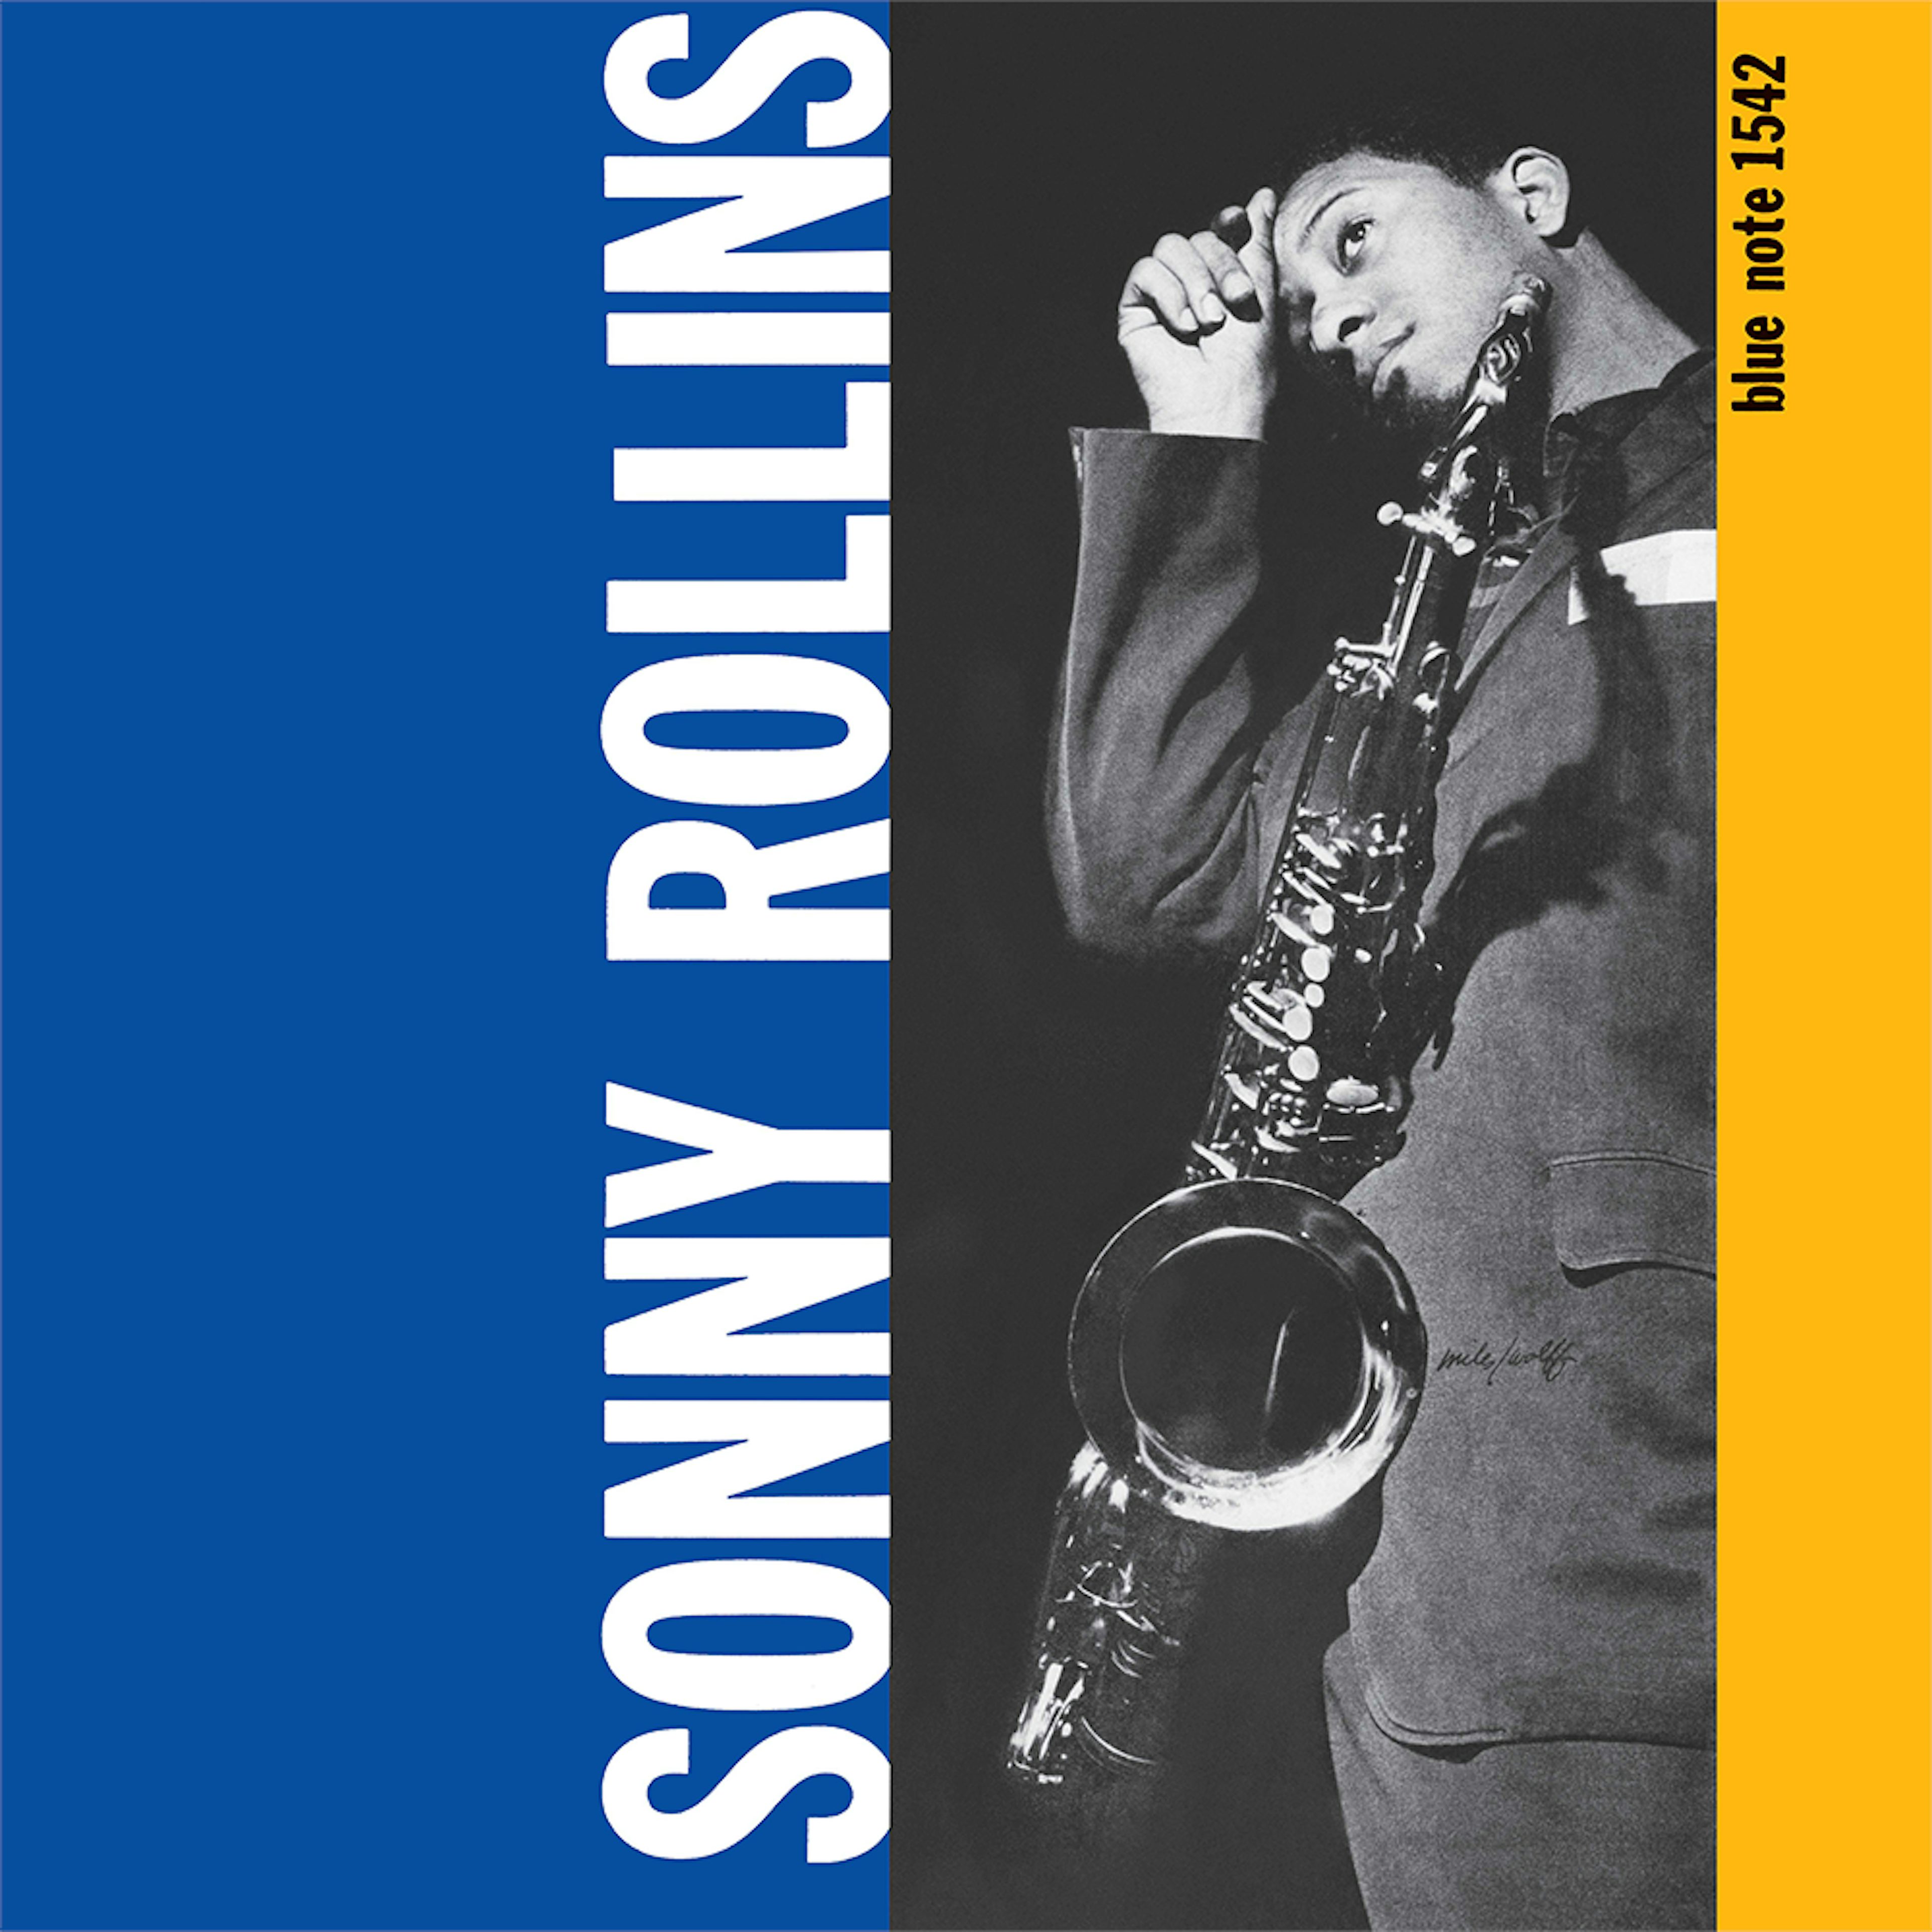 Sonny Rollins - Volume 1 LP (Blue Note Anniversary Reissue Series) Vinyl)